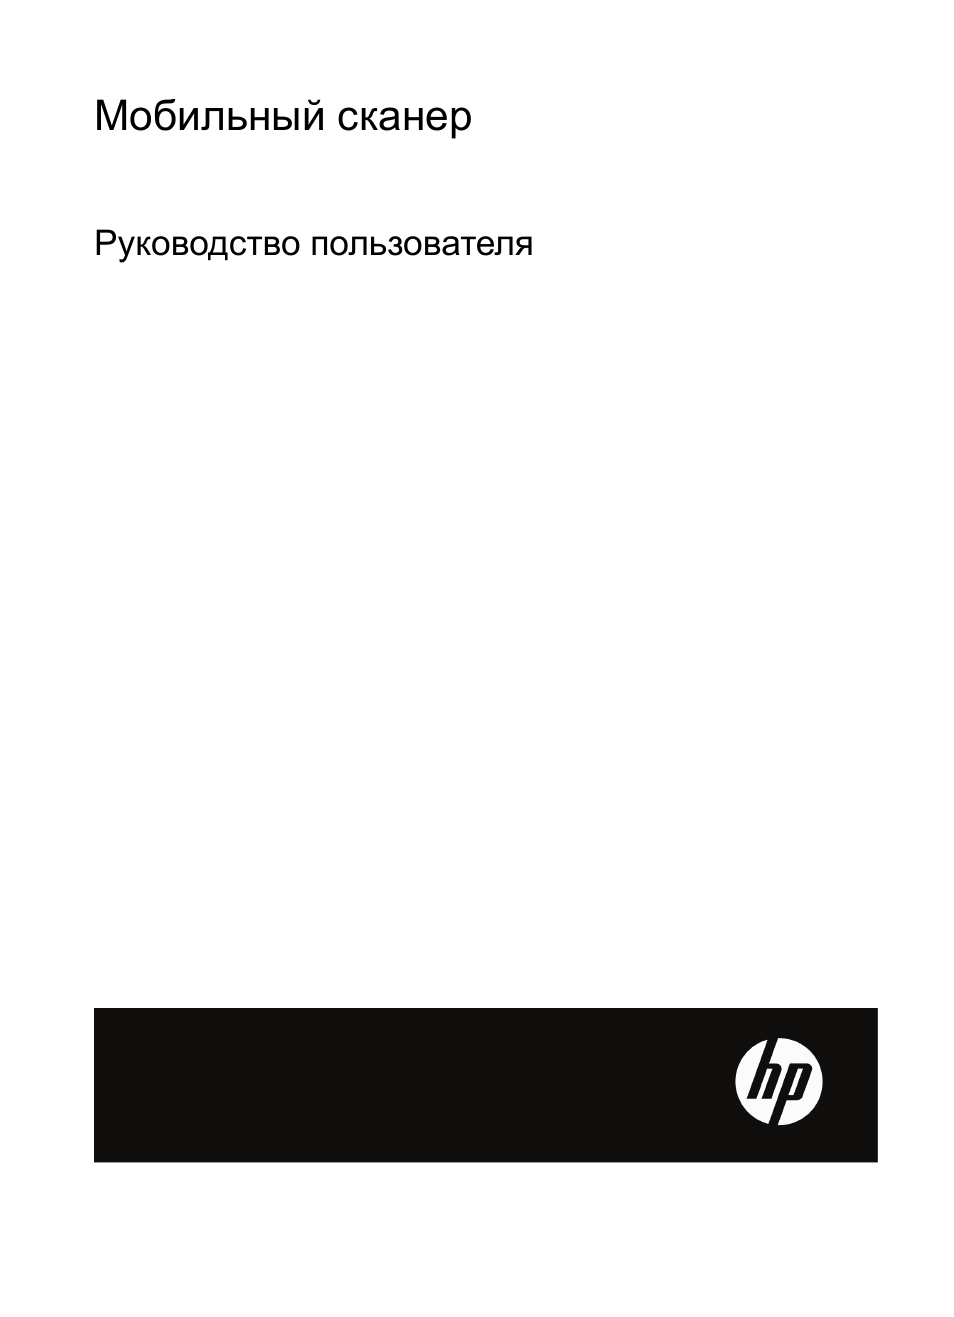 Инструкция по эксплуатации HP Мобильный сканер HP Scanjet Professional 1000 | 27 страниц